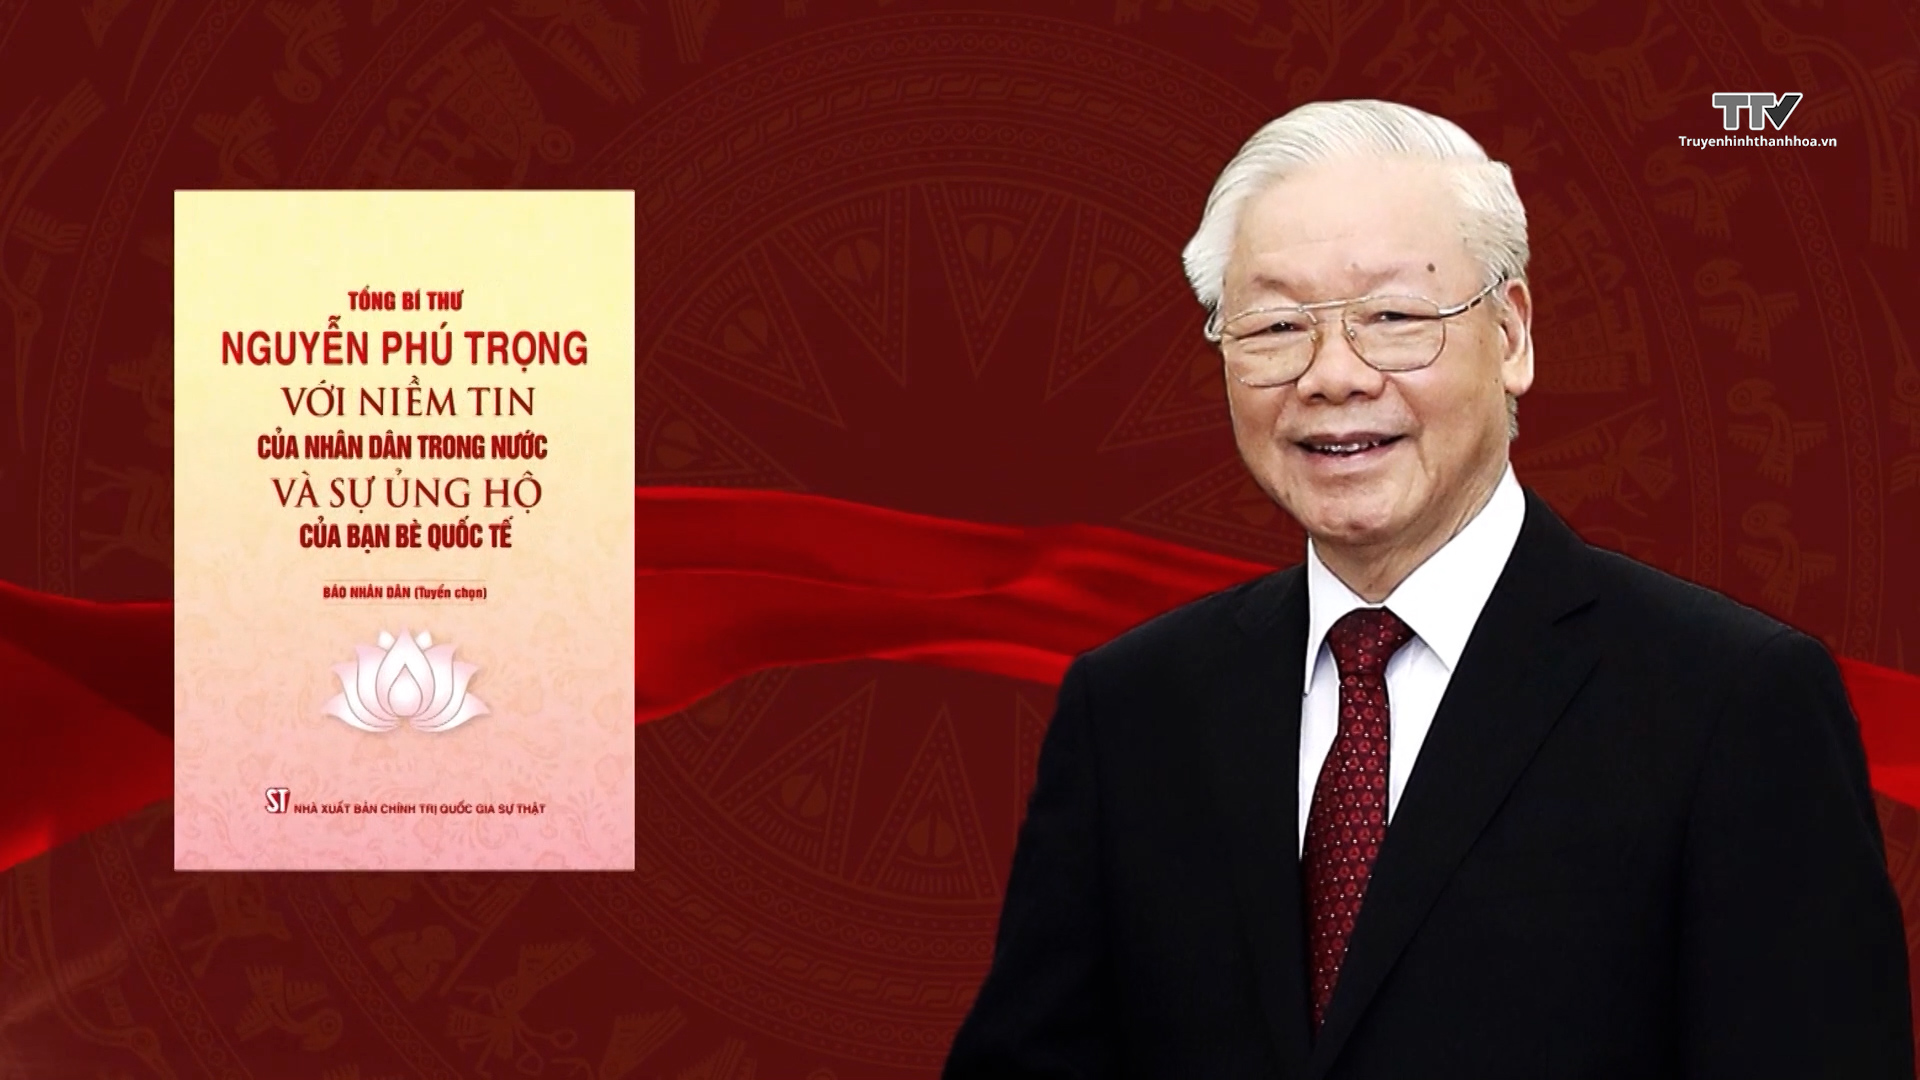 Tổng Bí thư Nguyễn Phú Trọng – Người lãnh đạo hết lòng vì dân- Ảnh 1.